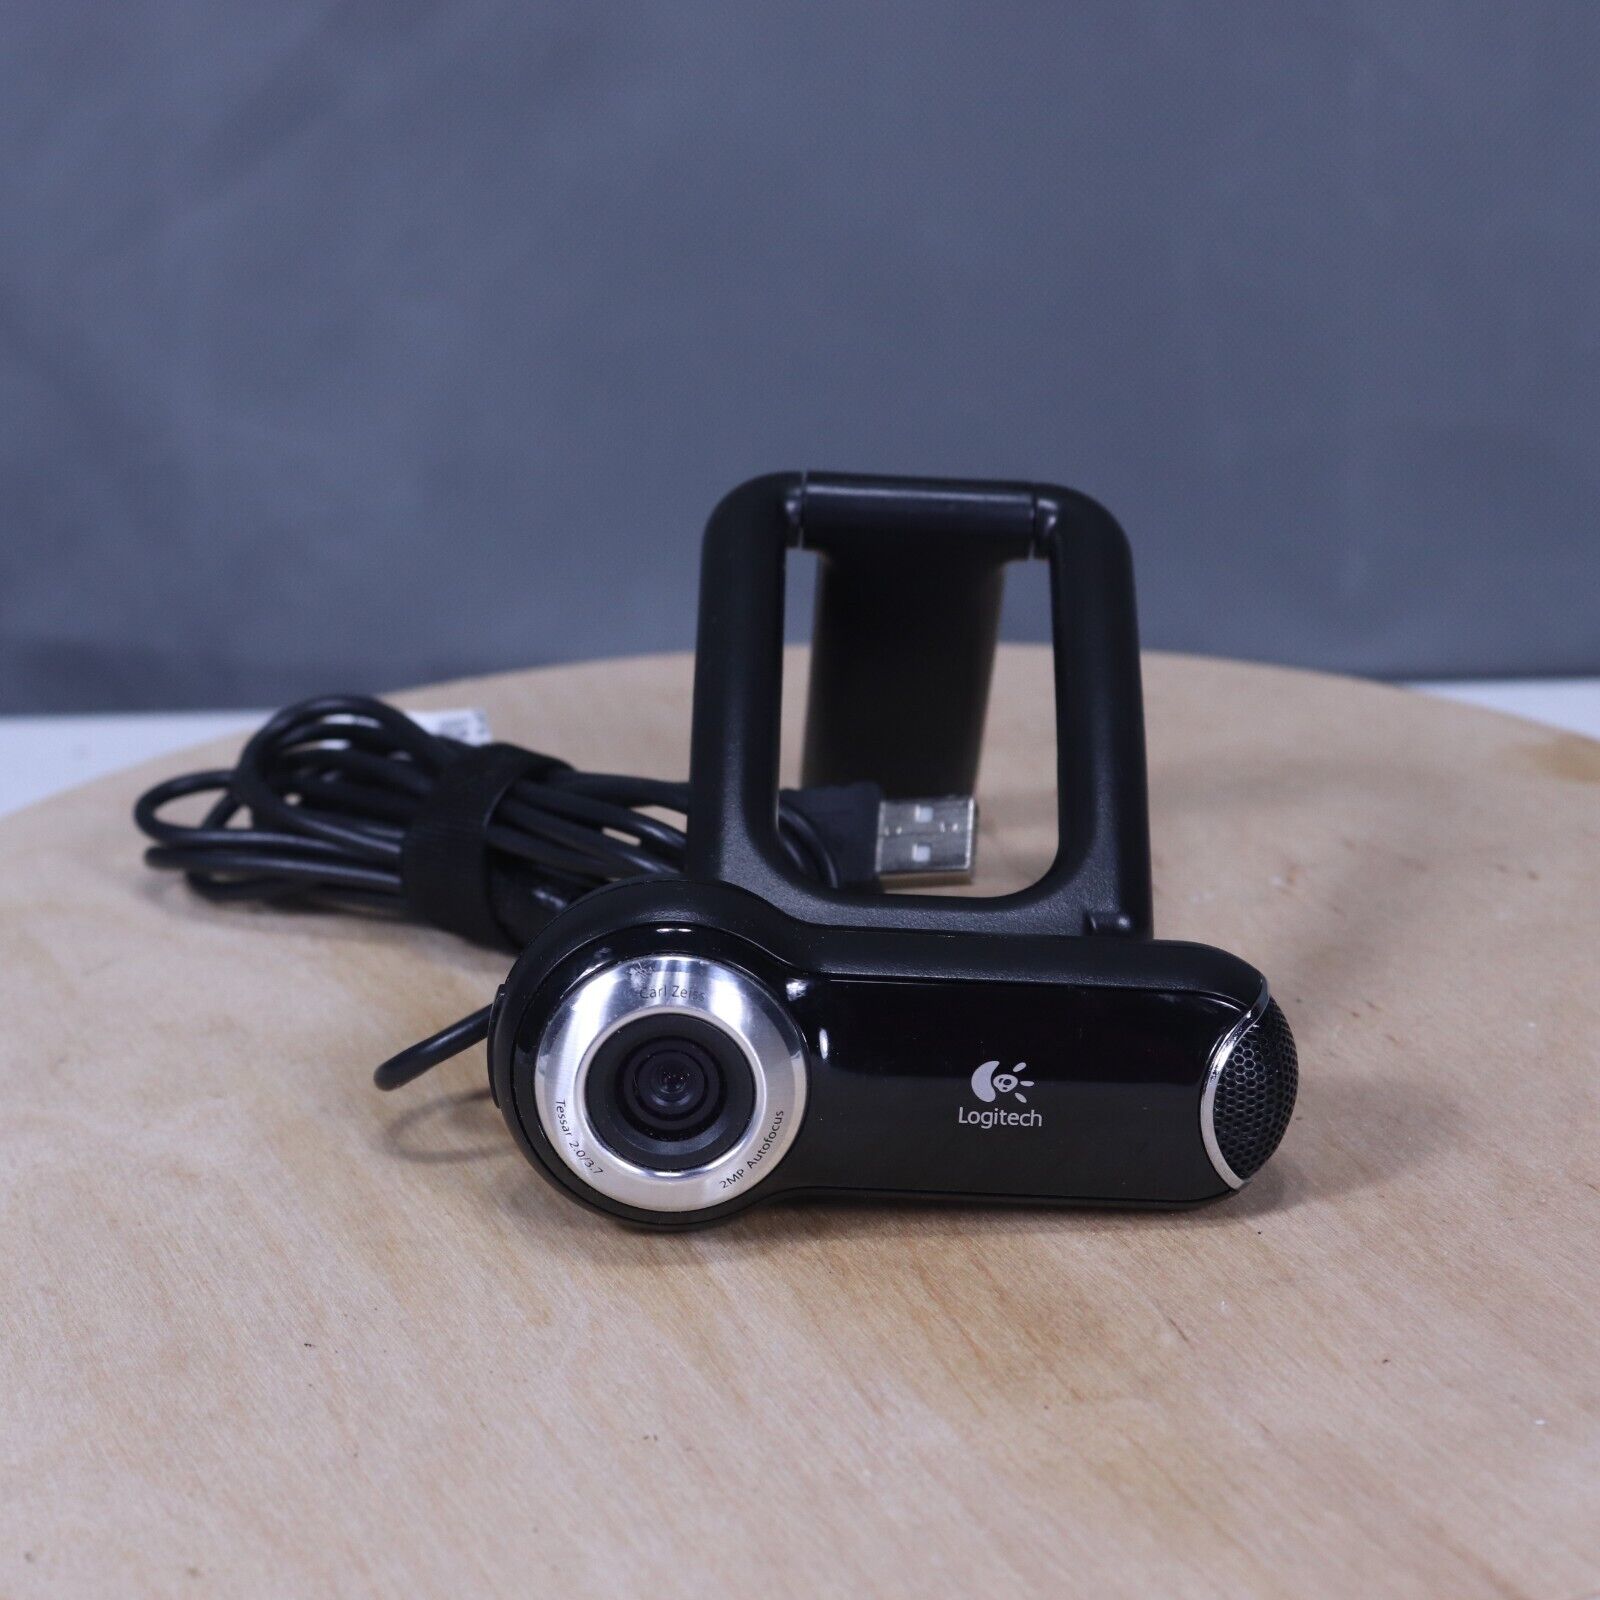 Logitech Webcam Pro 9000 with Carl Zeiss 2MP Autofocus Lens & Microphone Vintage